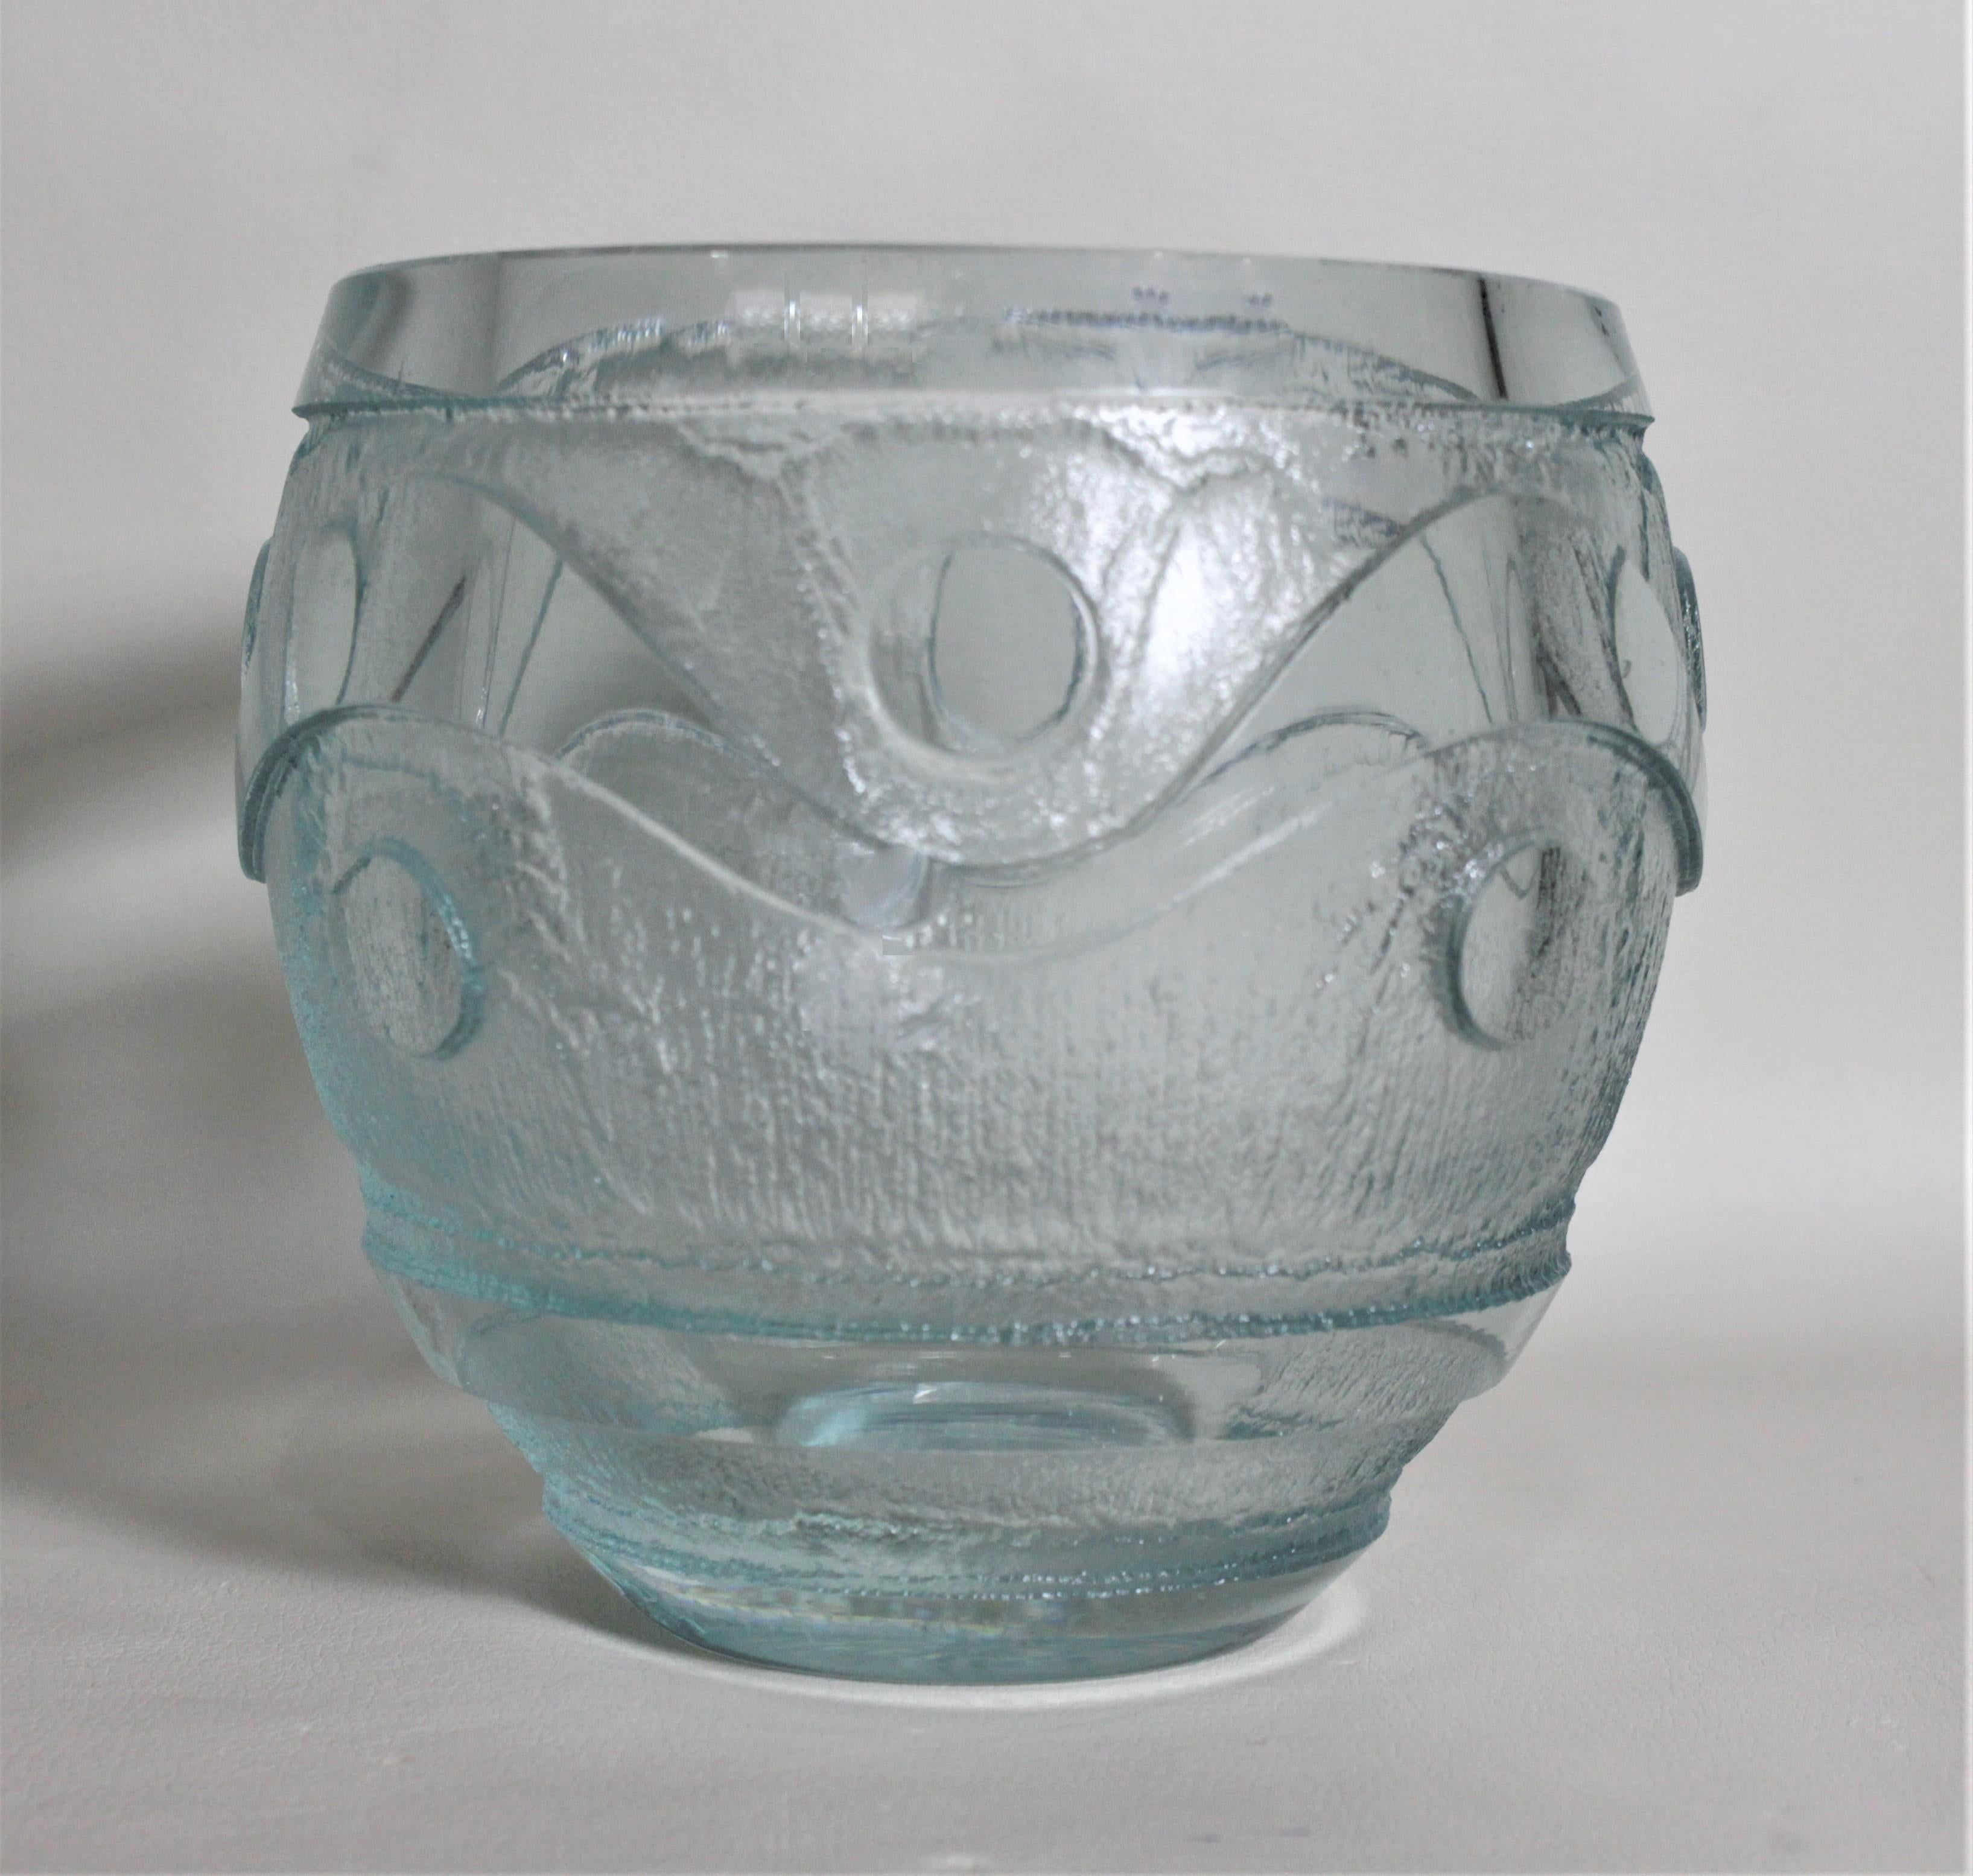 Diese antike Vase aus säuregeätztem Kunstglas wurde von dem renommierten französischen Hersteller Daum & Nancy um 1925 im Stil des Art déco hergestellt. Die Vase besteht aus einem sehr dicken, grün getönten Glas mit einer bauchigen Form und wurde